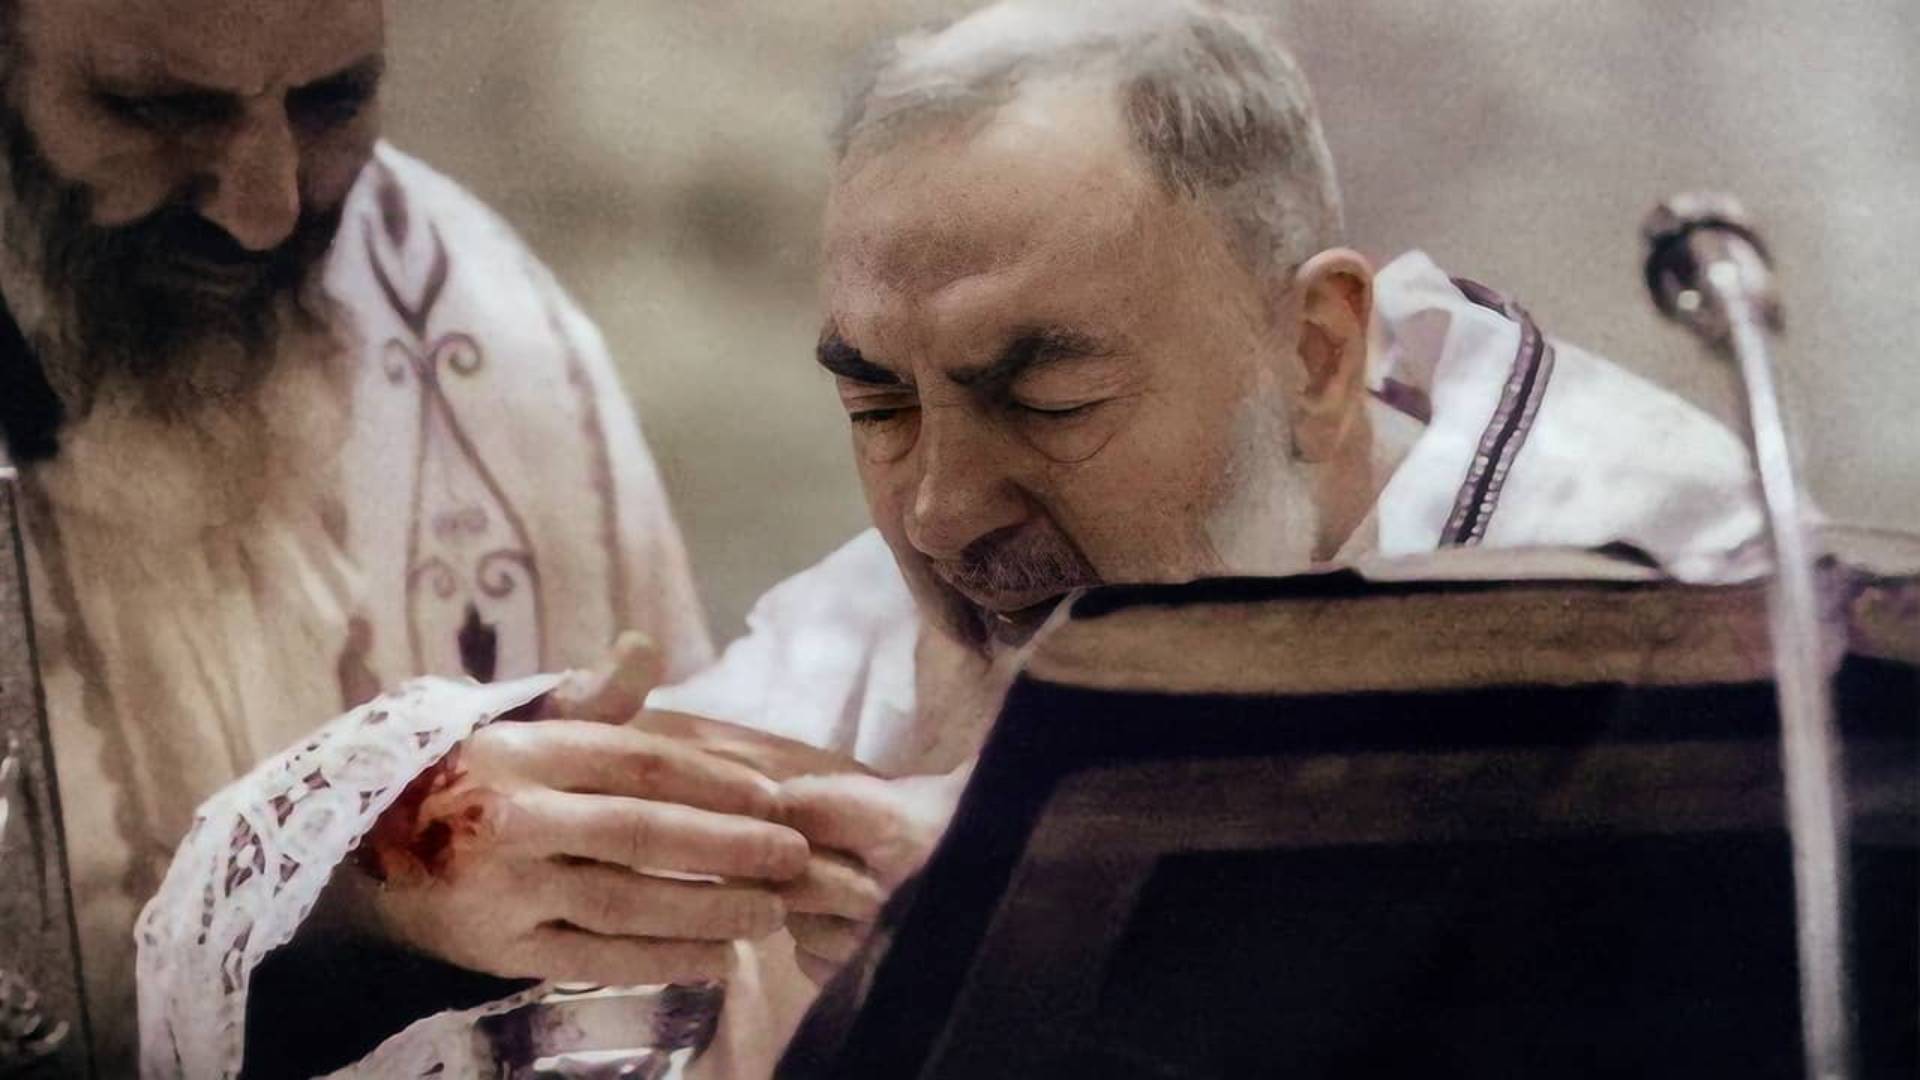 Há 104 anos São Padre Pio recebia os estigmas de Cristo